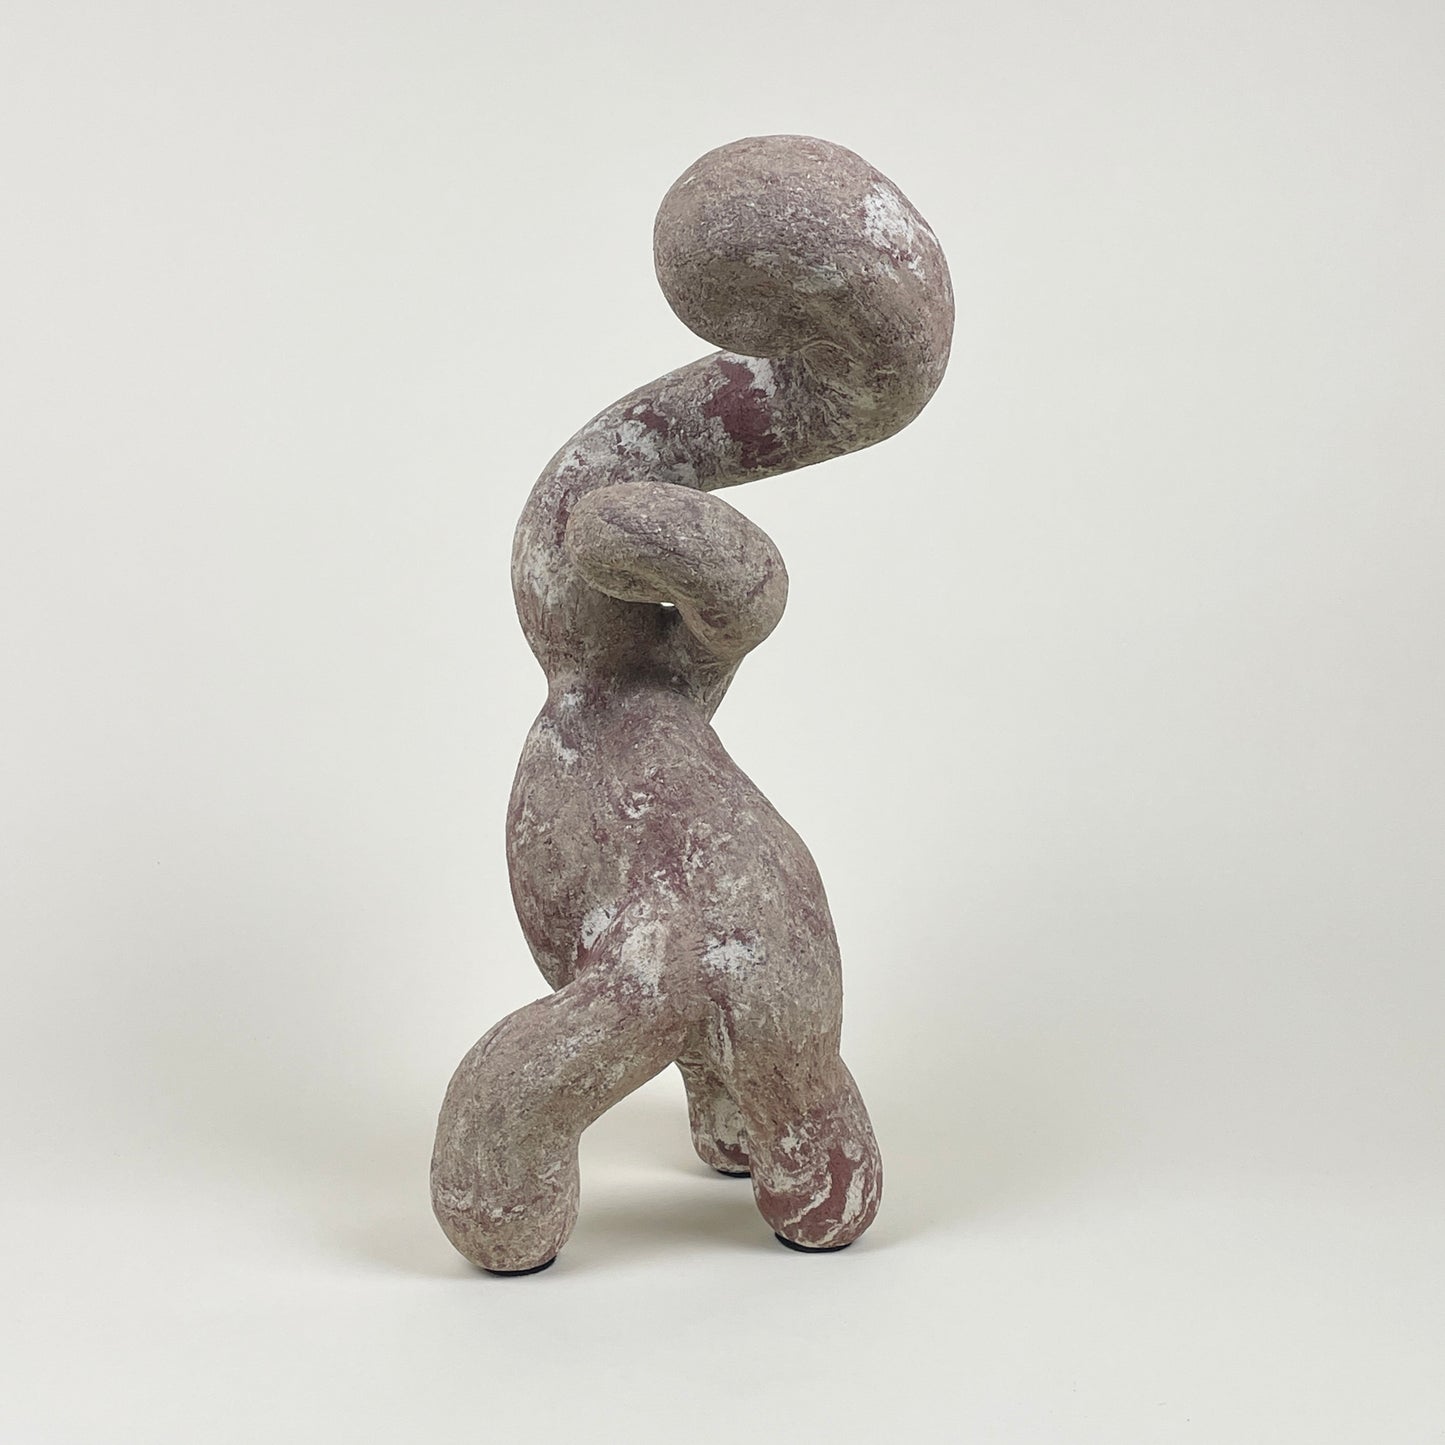 Stoneware sculpture by Anna Harström